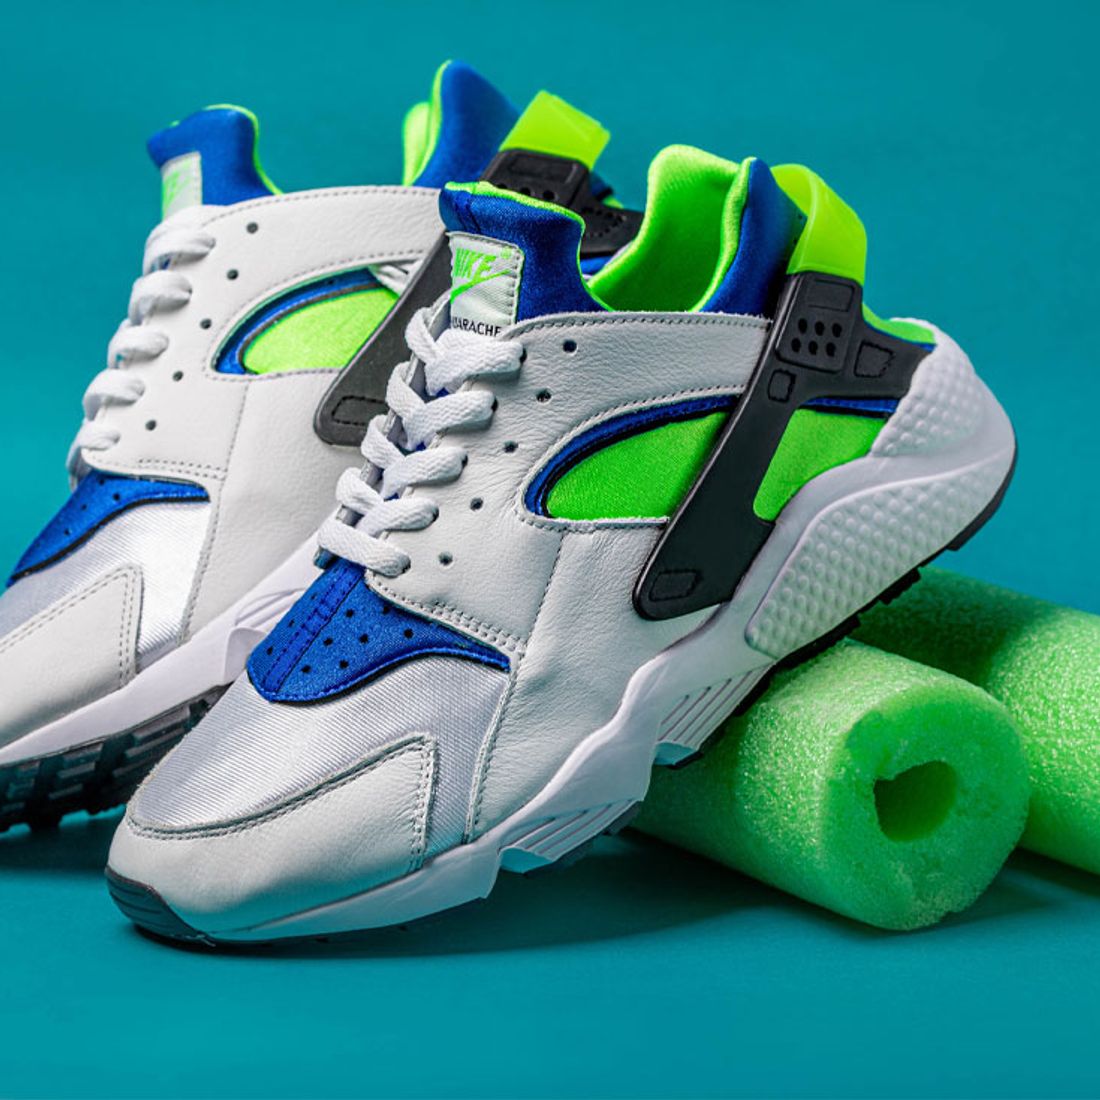 Sneakers,streetwear,and supreme - Nike Air Huarache OG Scream Green  Returning in February, via KicksOnFire.com